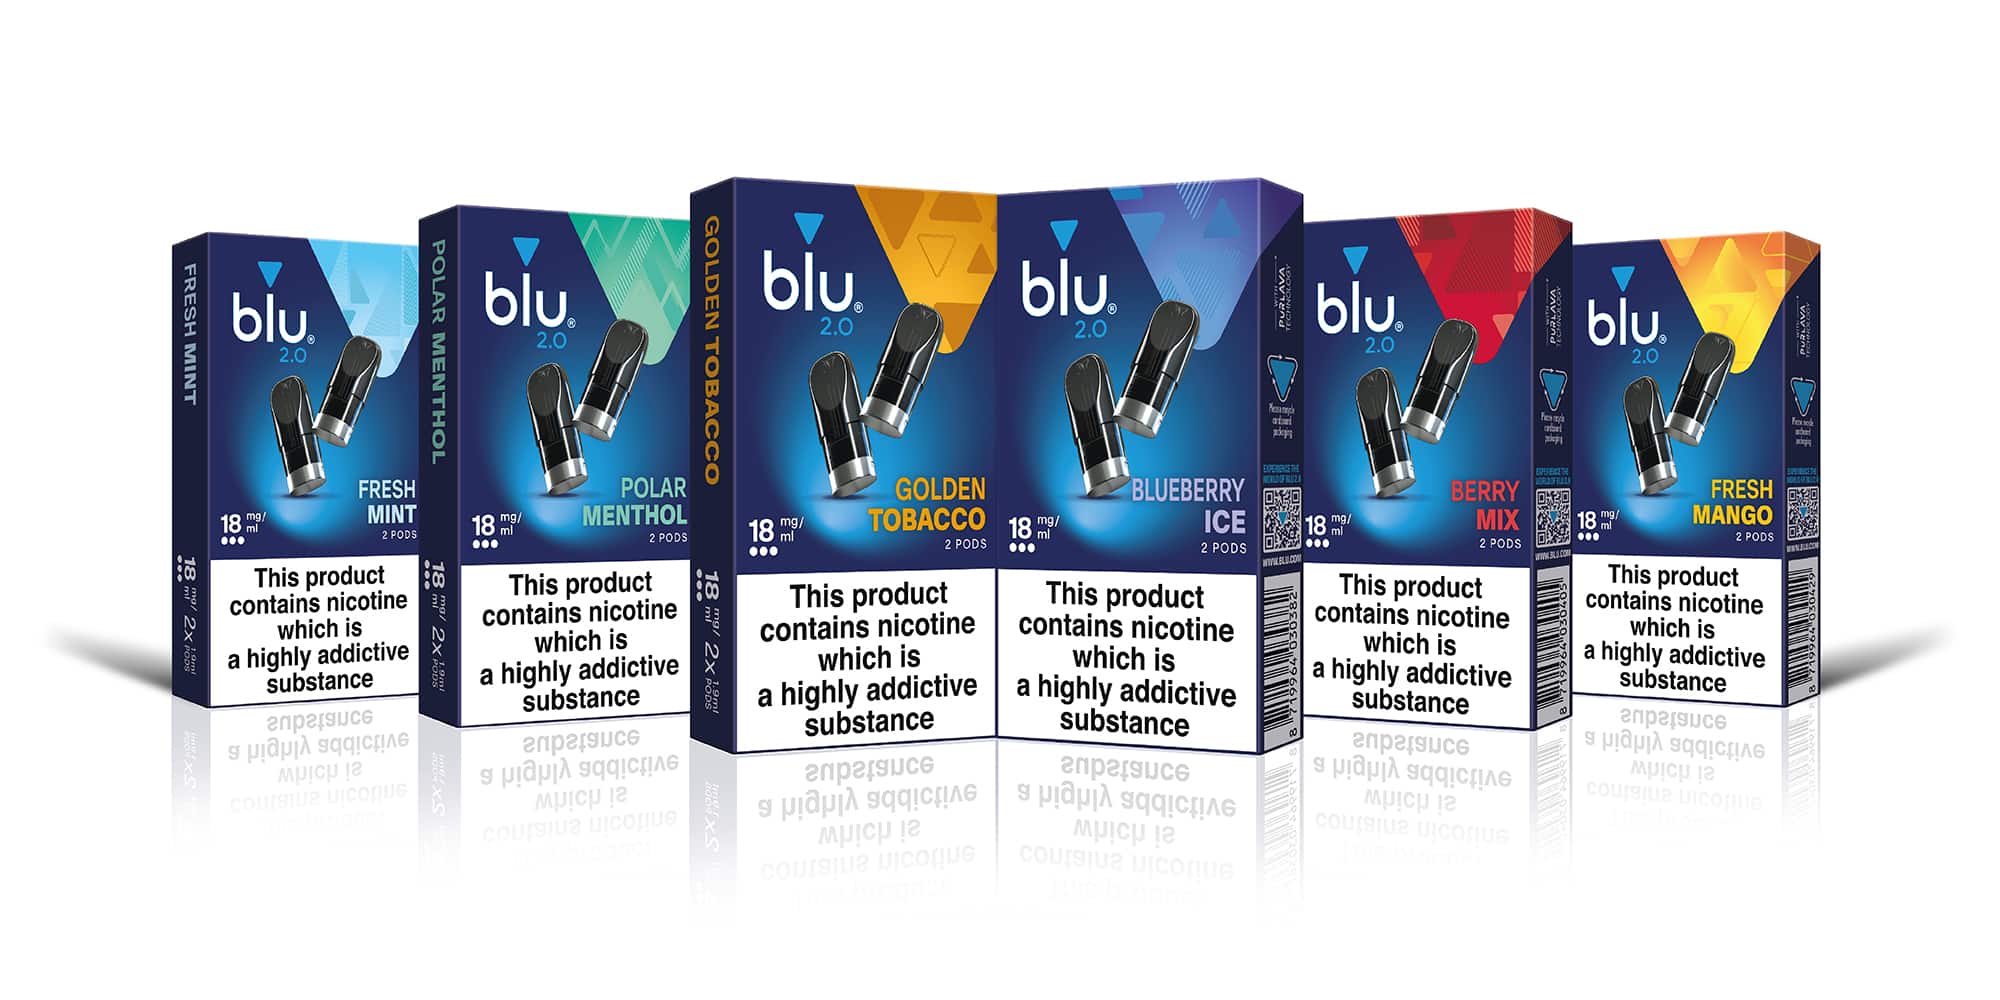 blu 2.0 pods banner